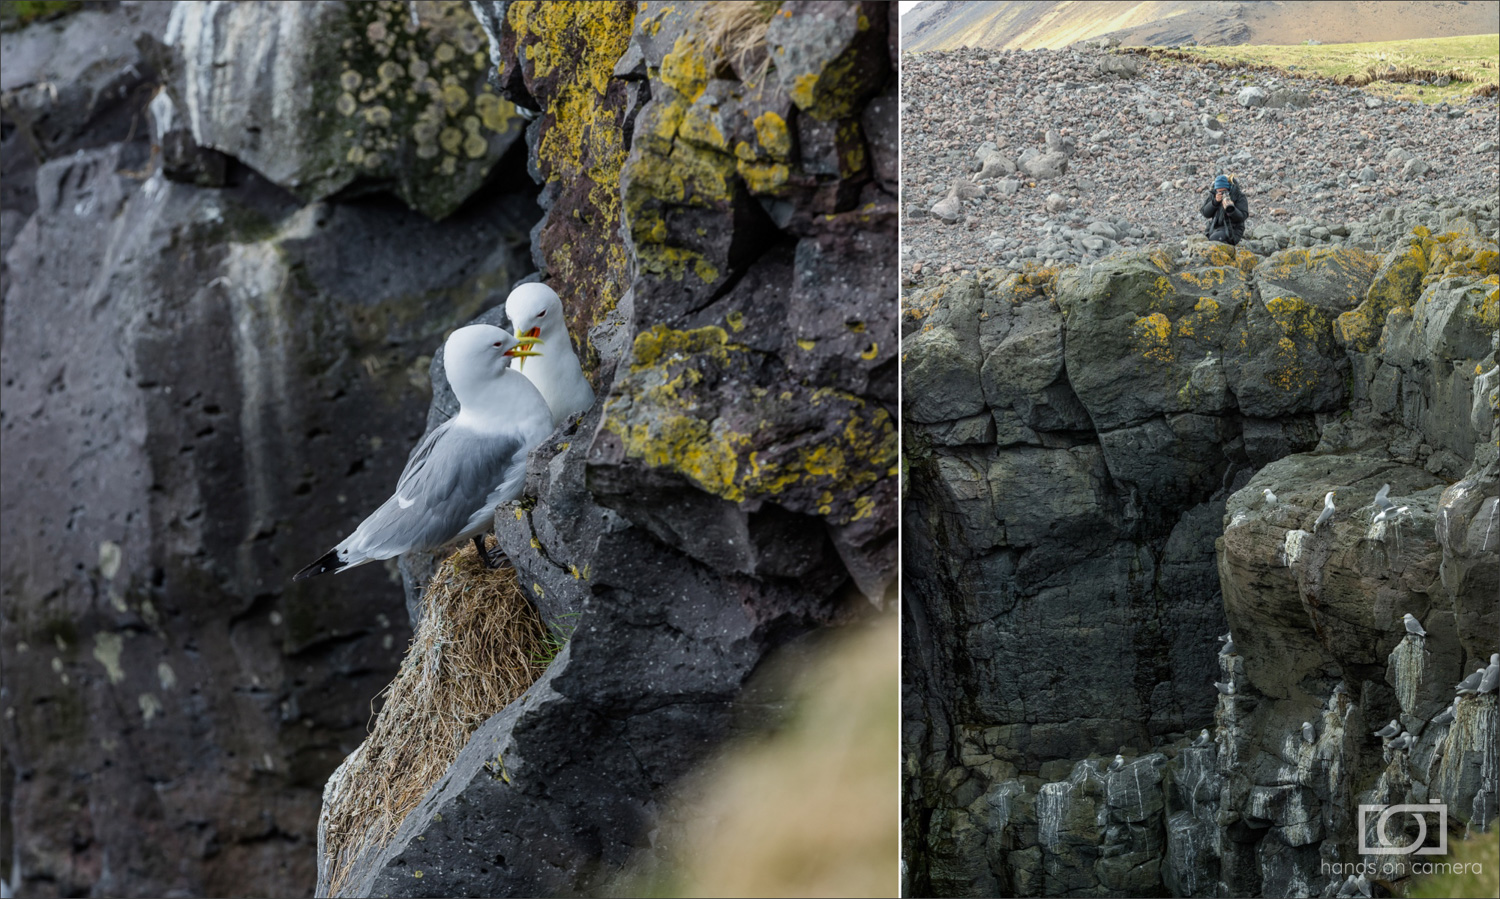 Anarstarpi Island. Hier kommt man den unzähligen Vogelkolonien sehr nah.